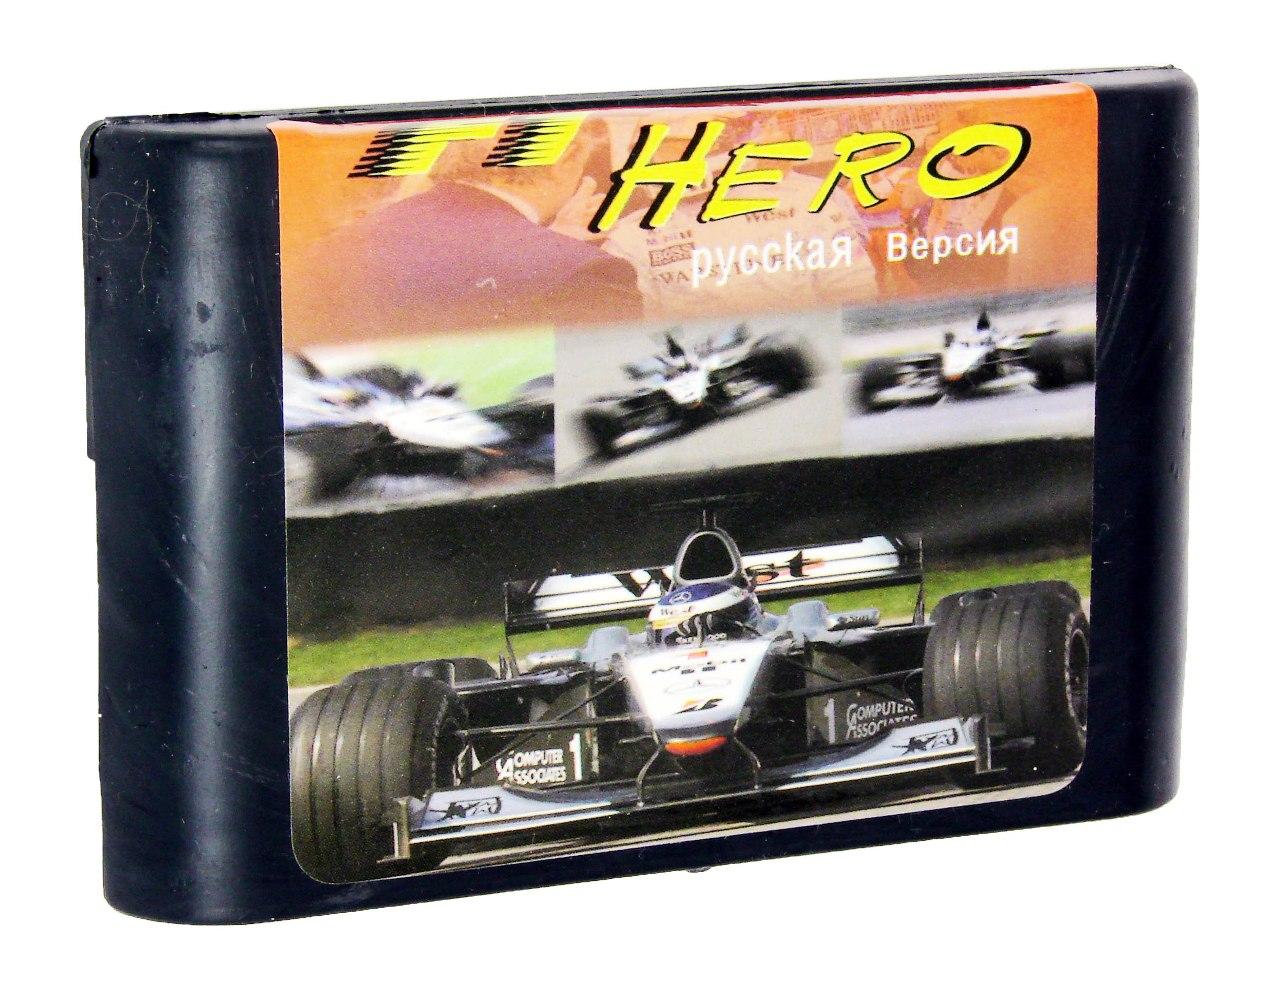   Sega F1 Hero (Sega)